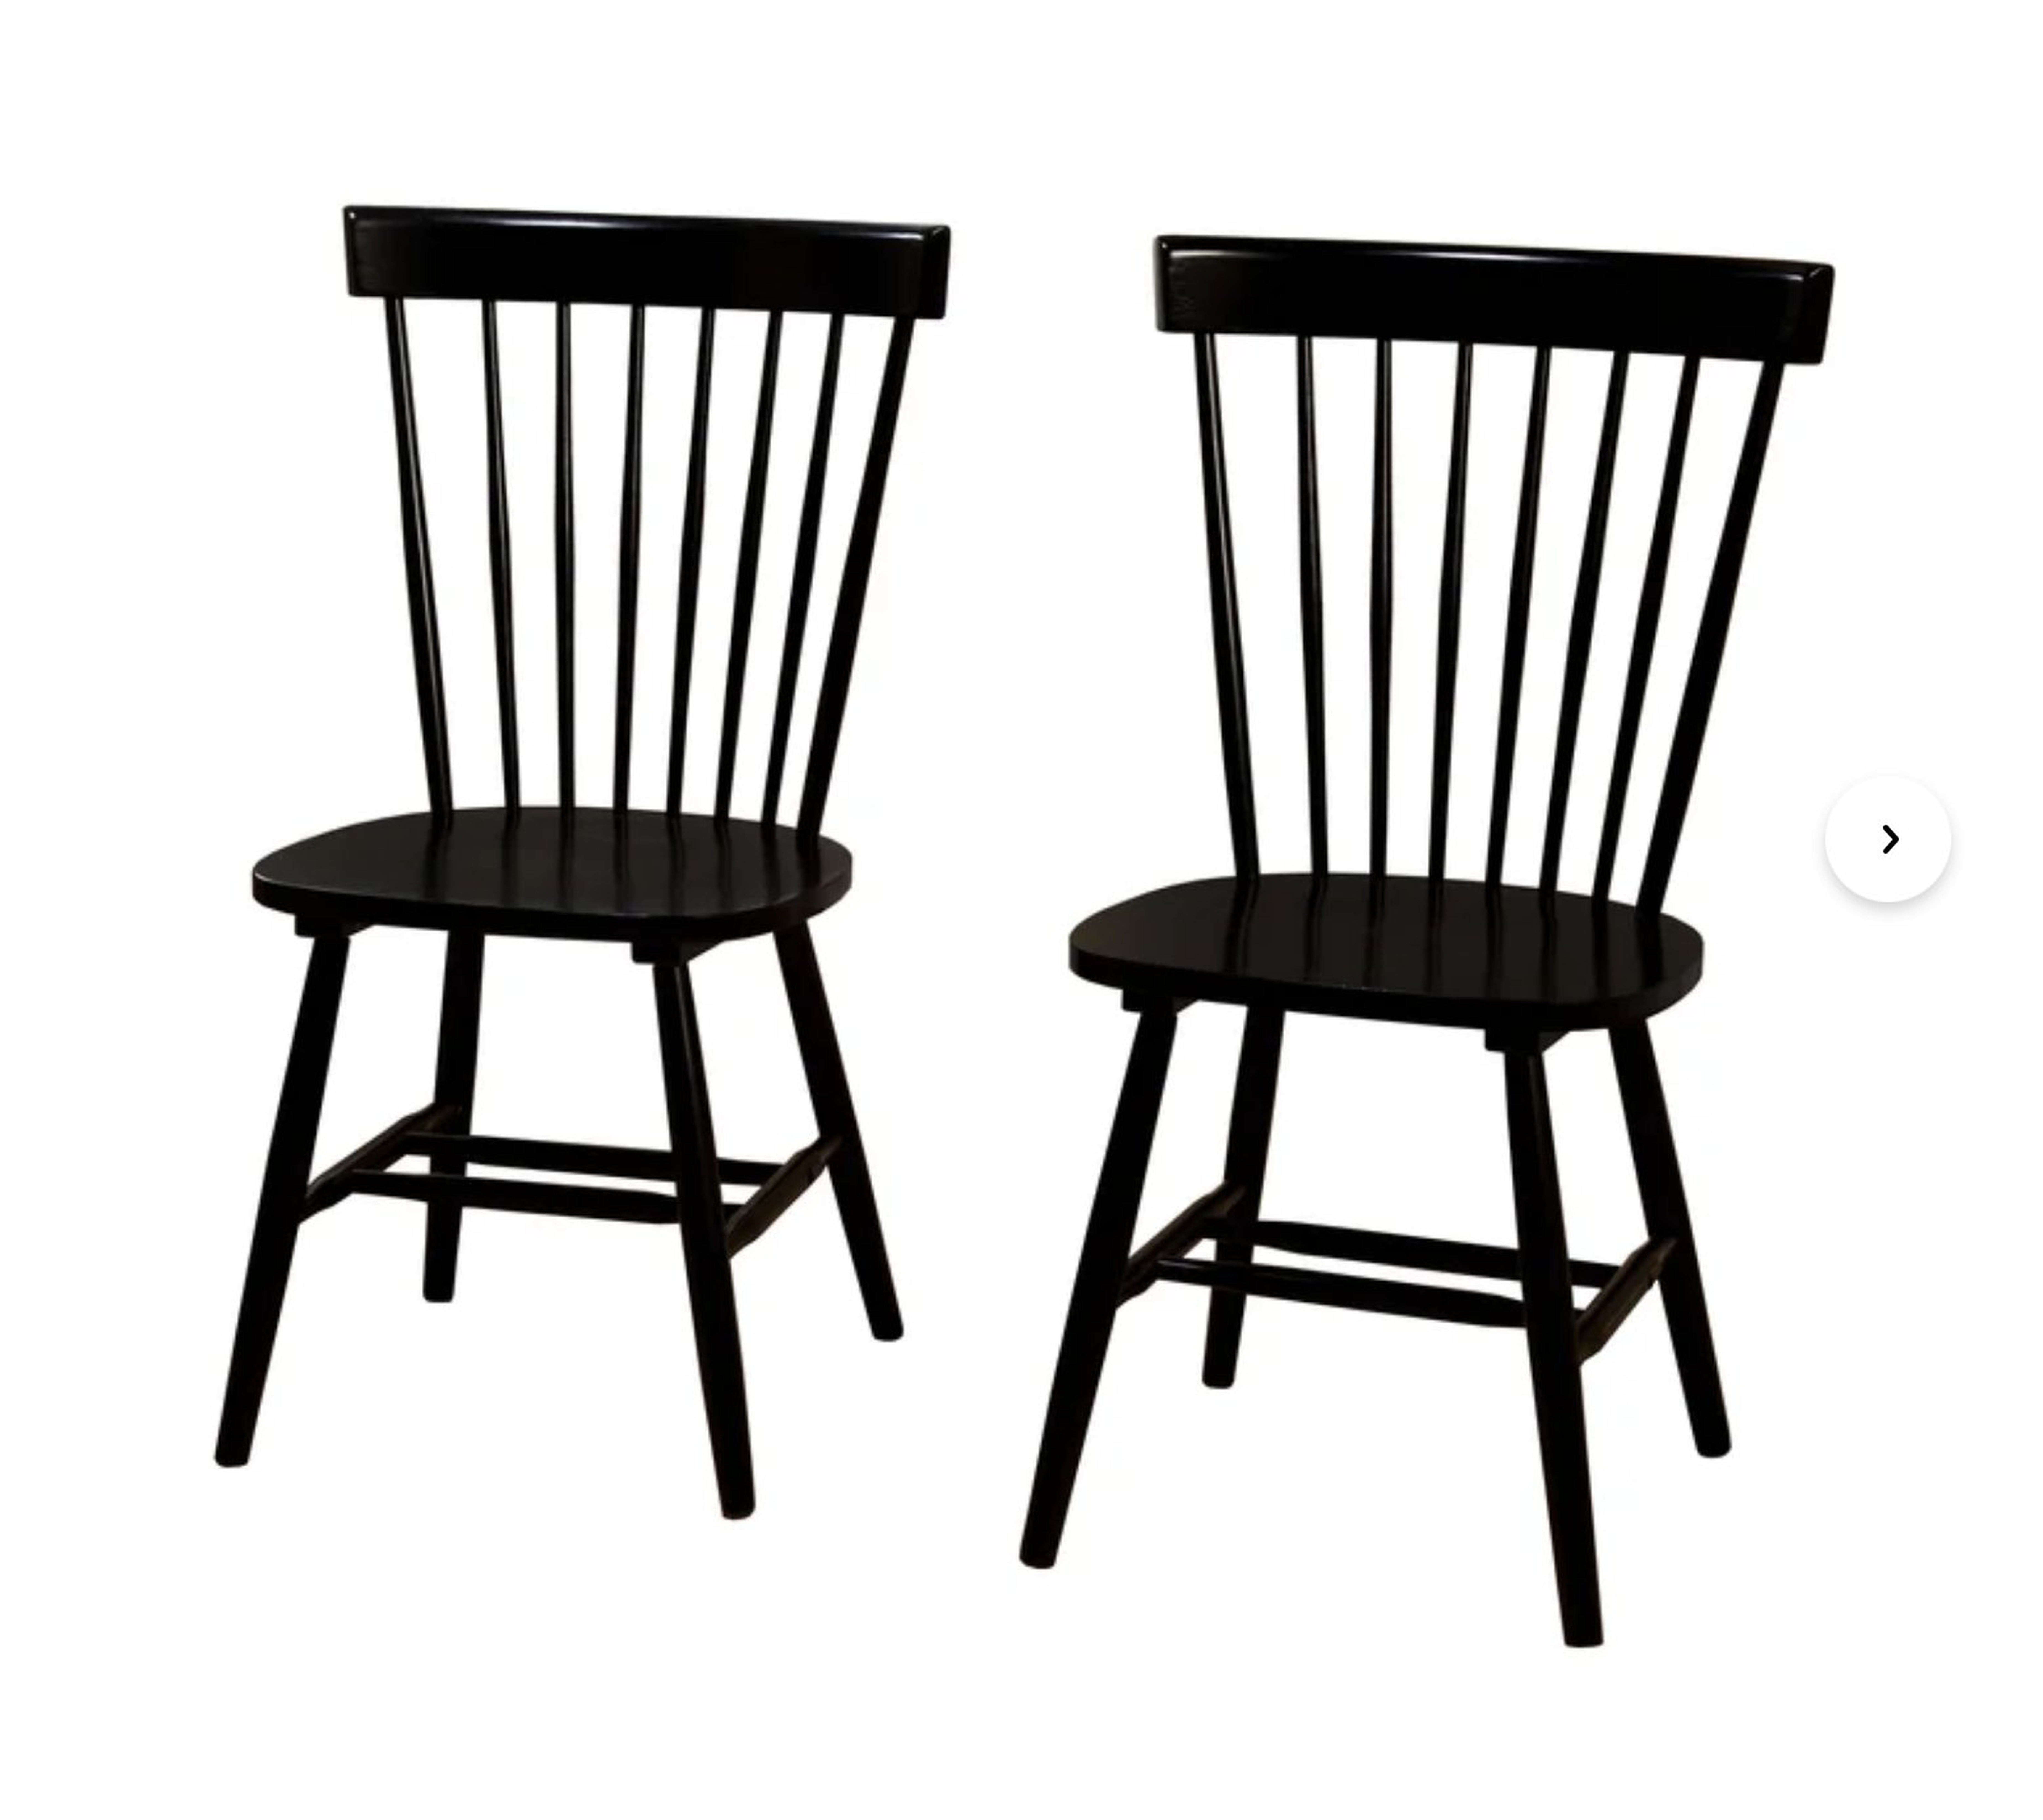 Roudebush Solid Wood Dining Chair / Set of 2 / Black - Wayfair